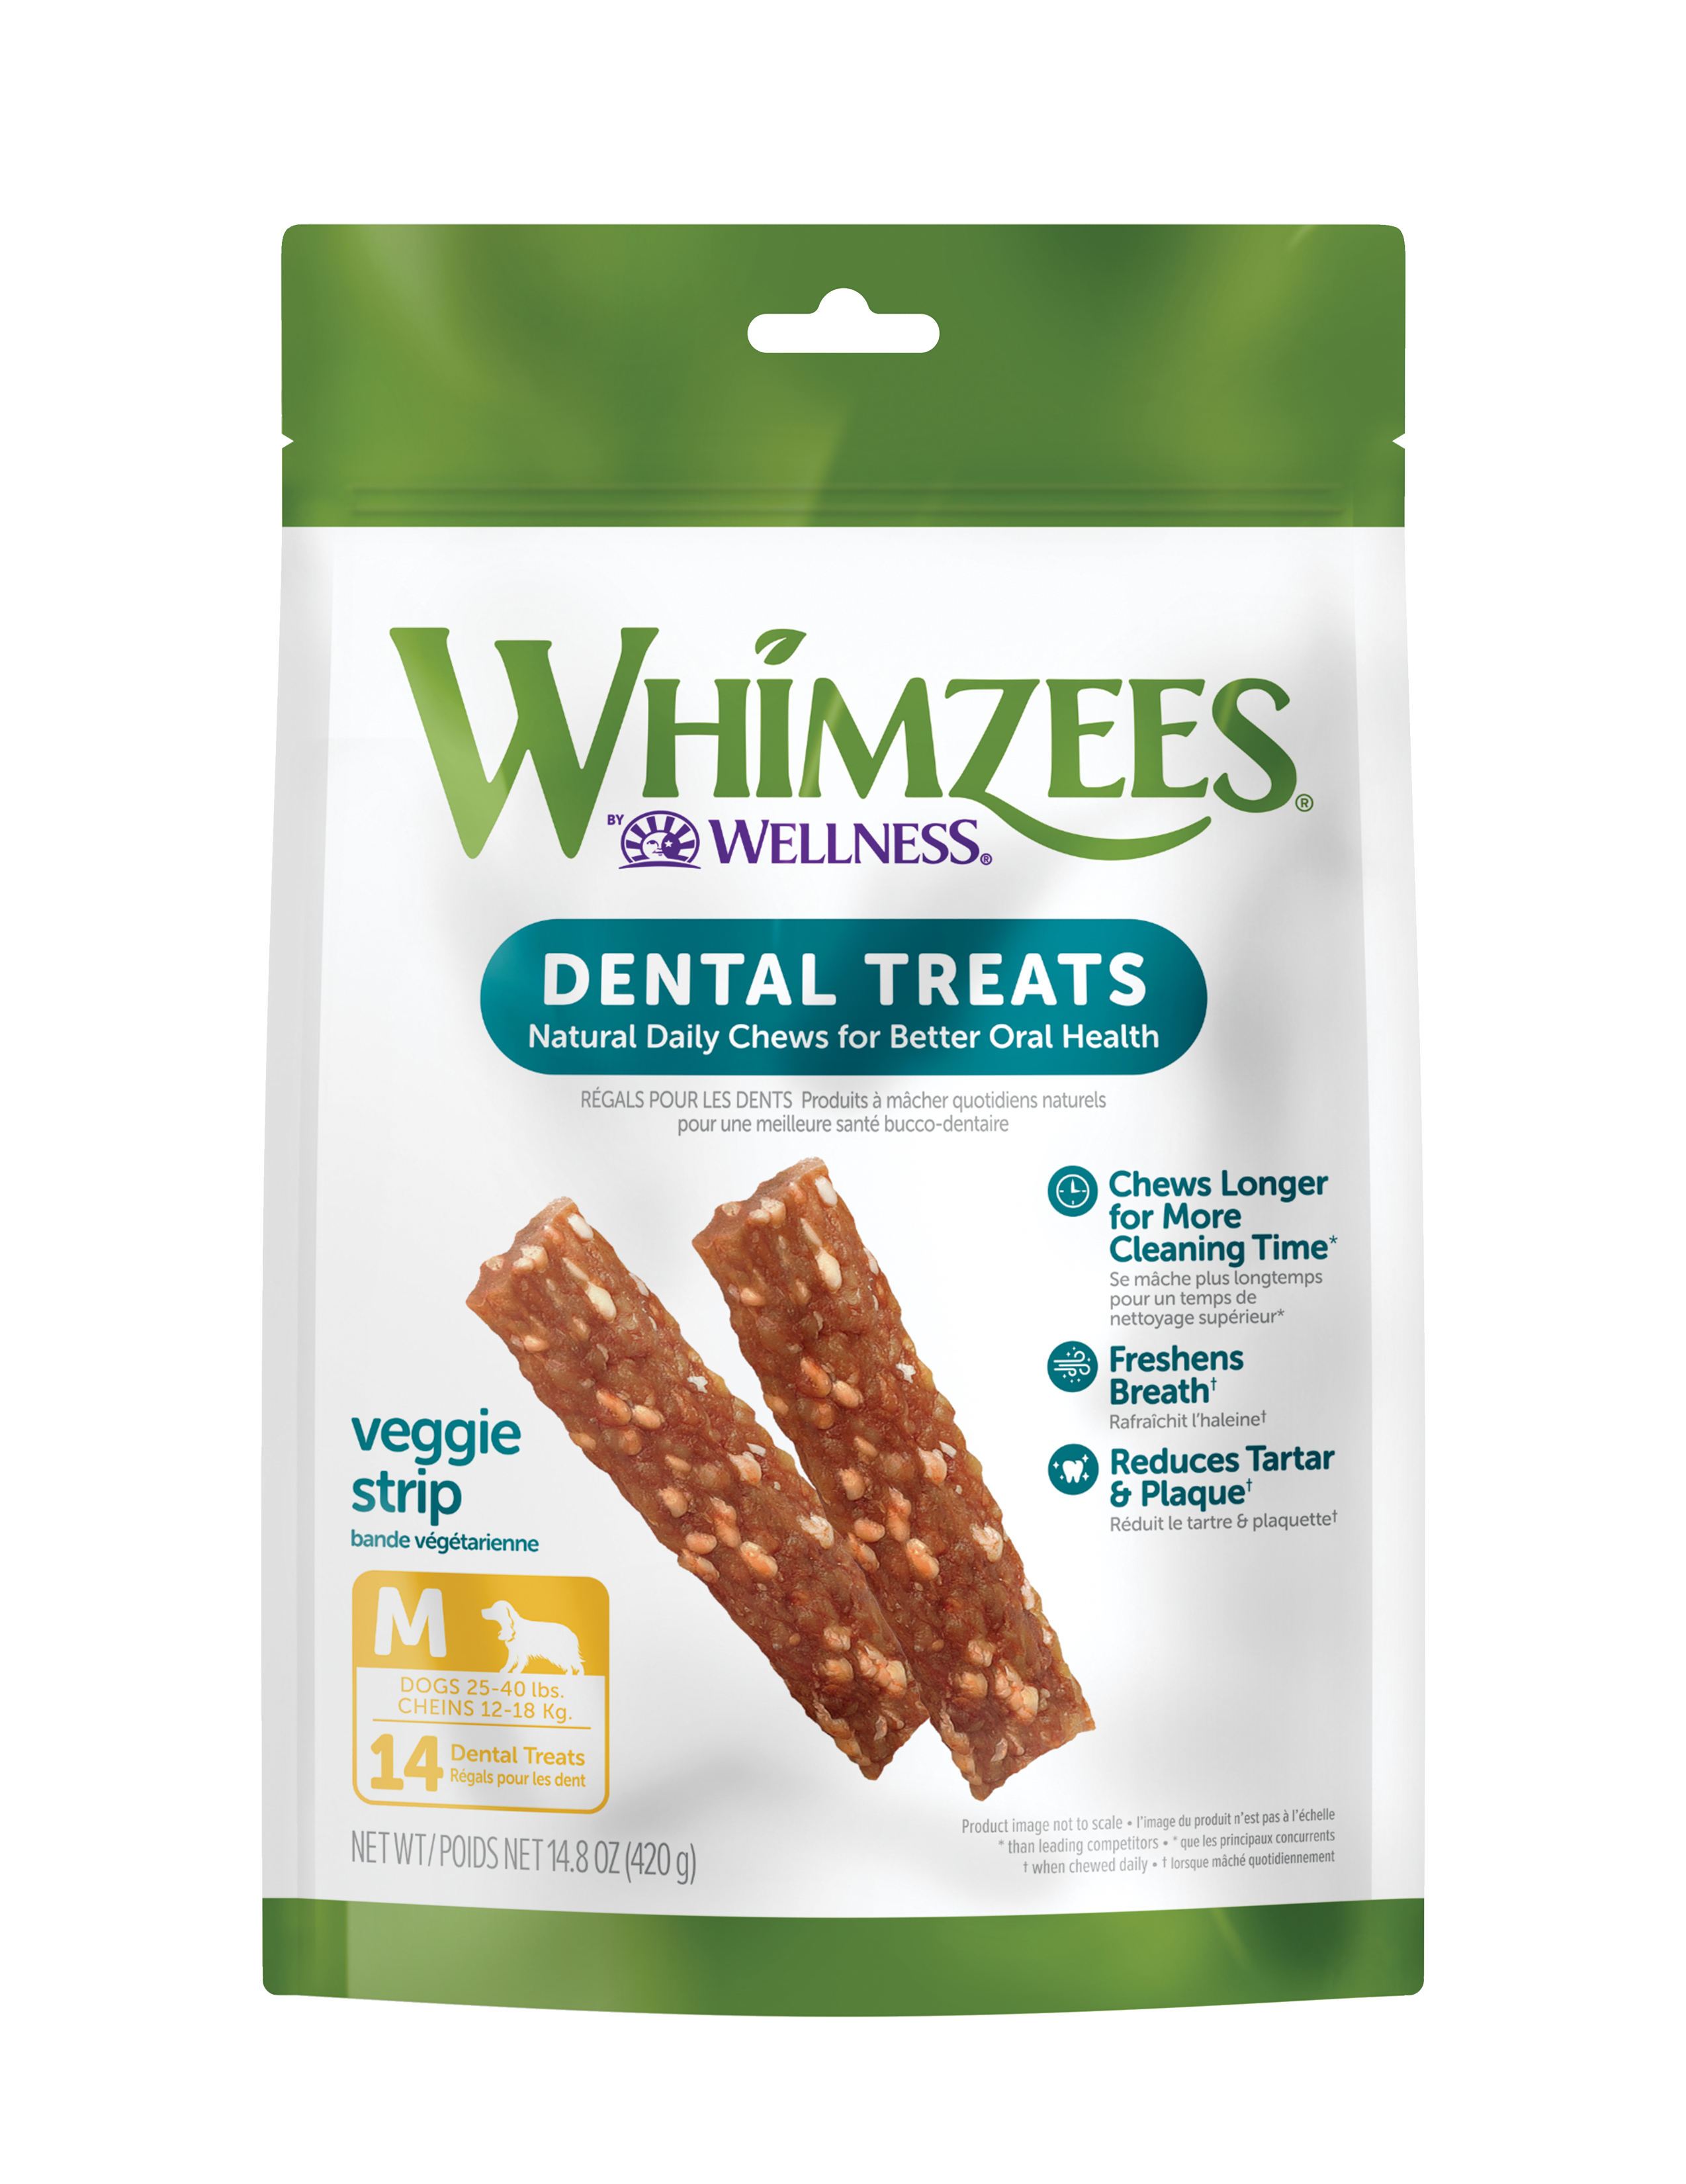 WHIMZEES Value Bags Veggie Strip